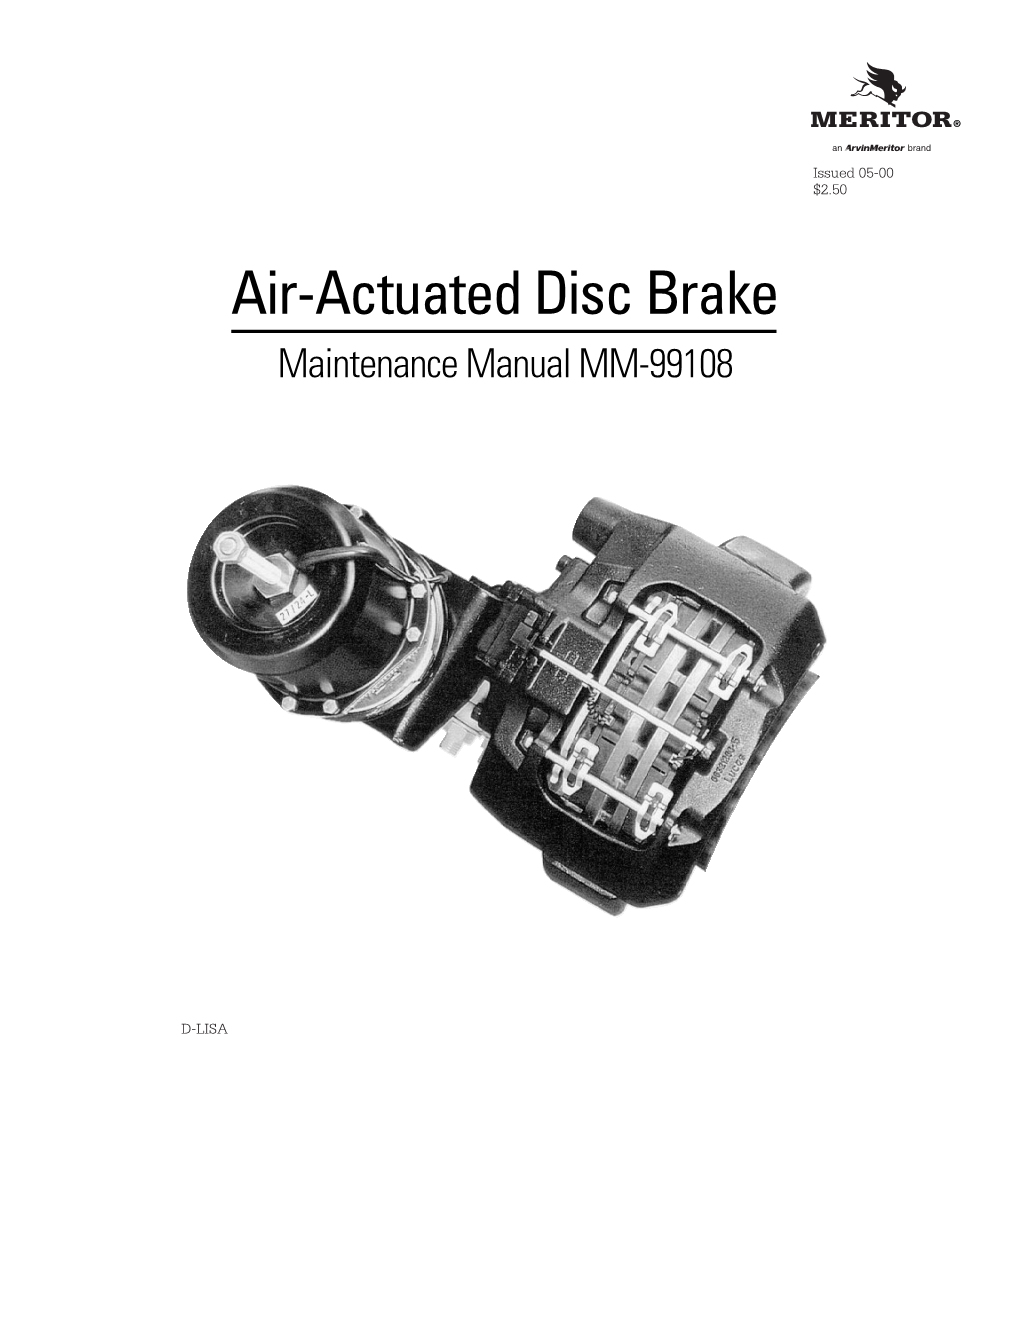 Disc Brake Maintenance Manual MM-99108